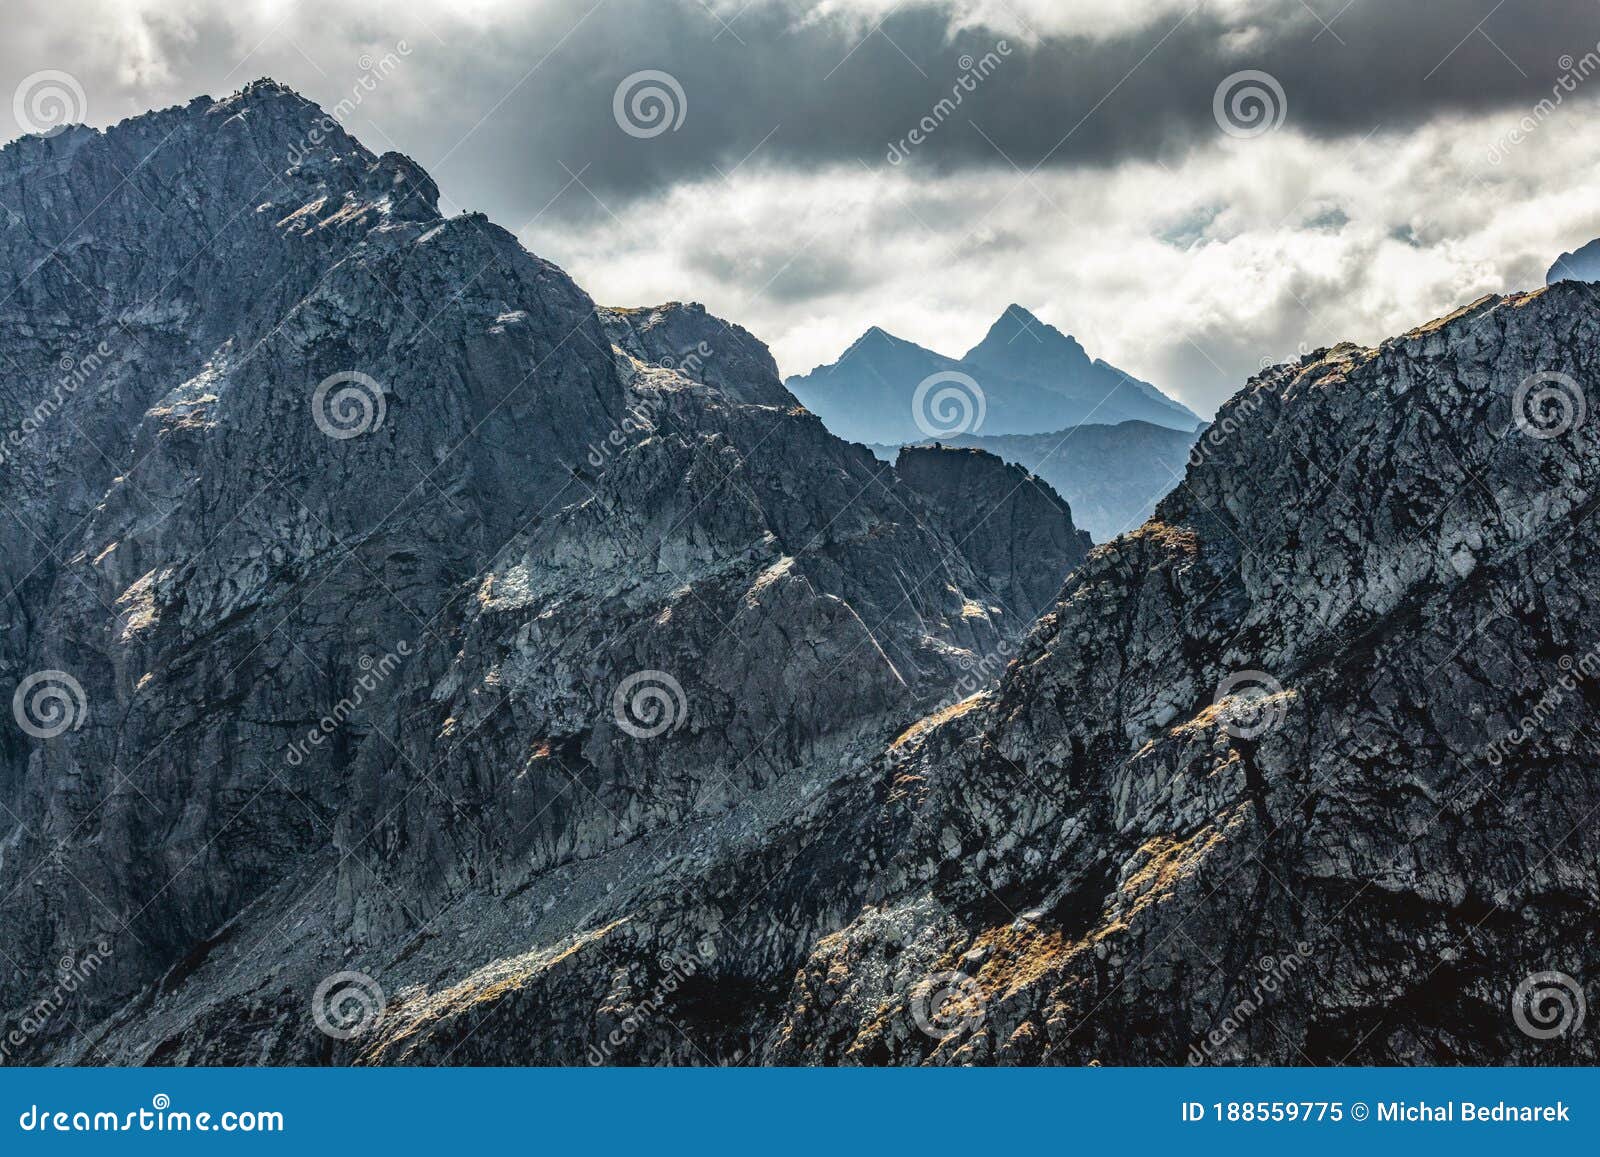 high mountain peaks. tatra mountains in poland. view from koscielec